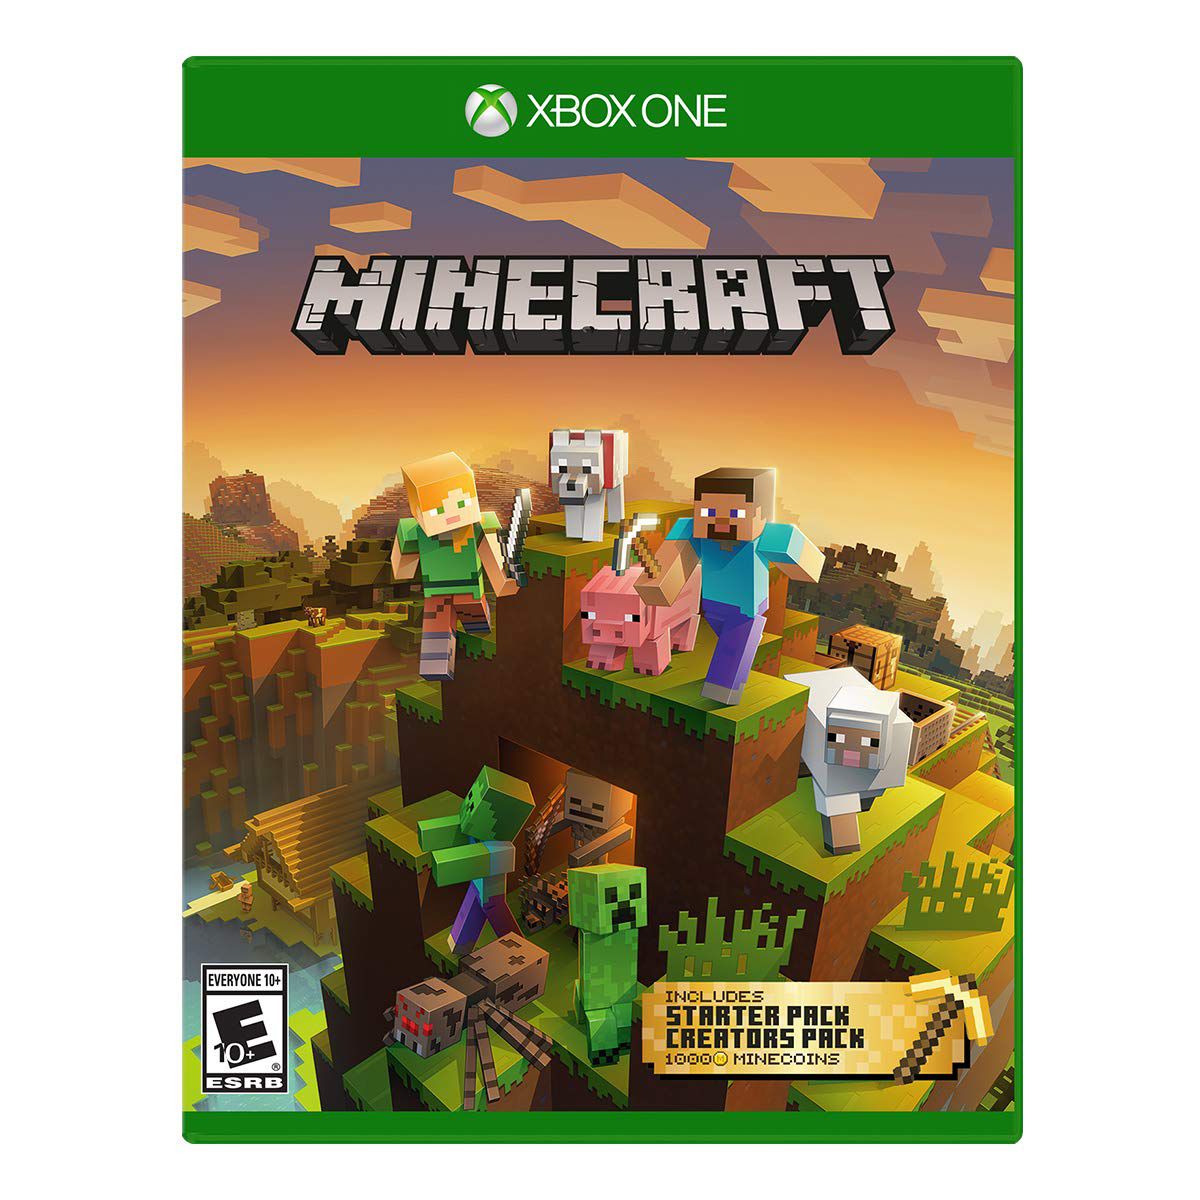 Jogo Minecraft para Xbox One - Totalmente em Porrtuguês - Limmax